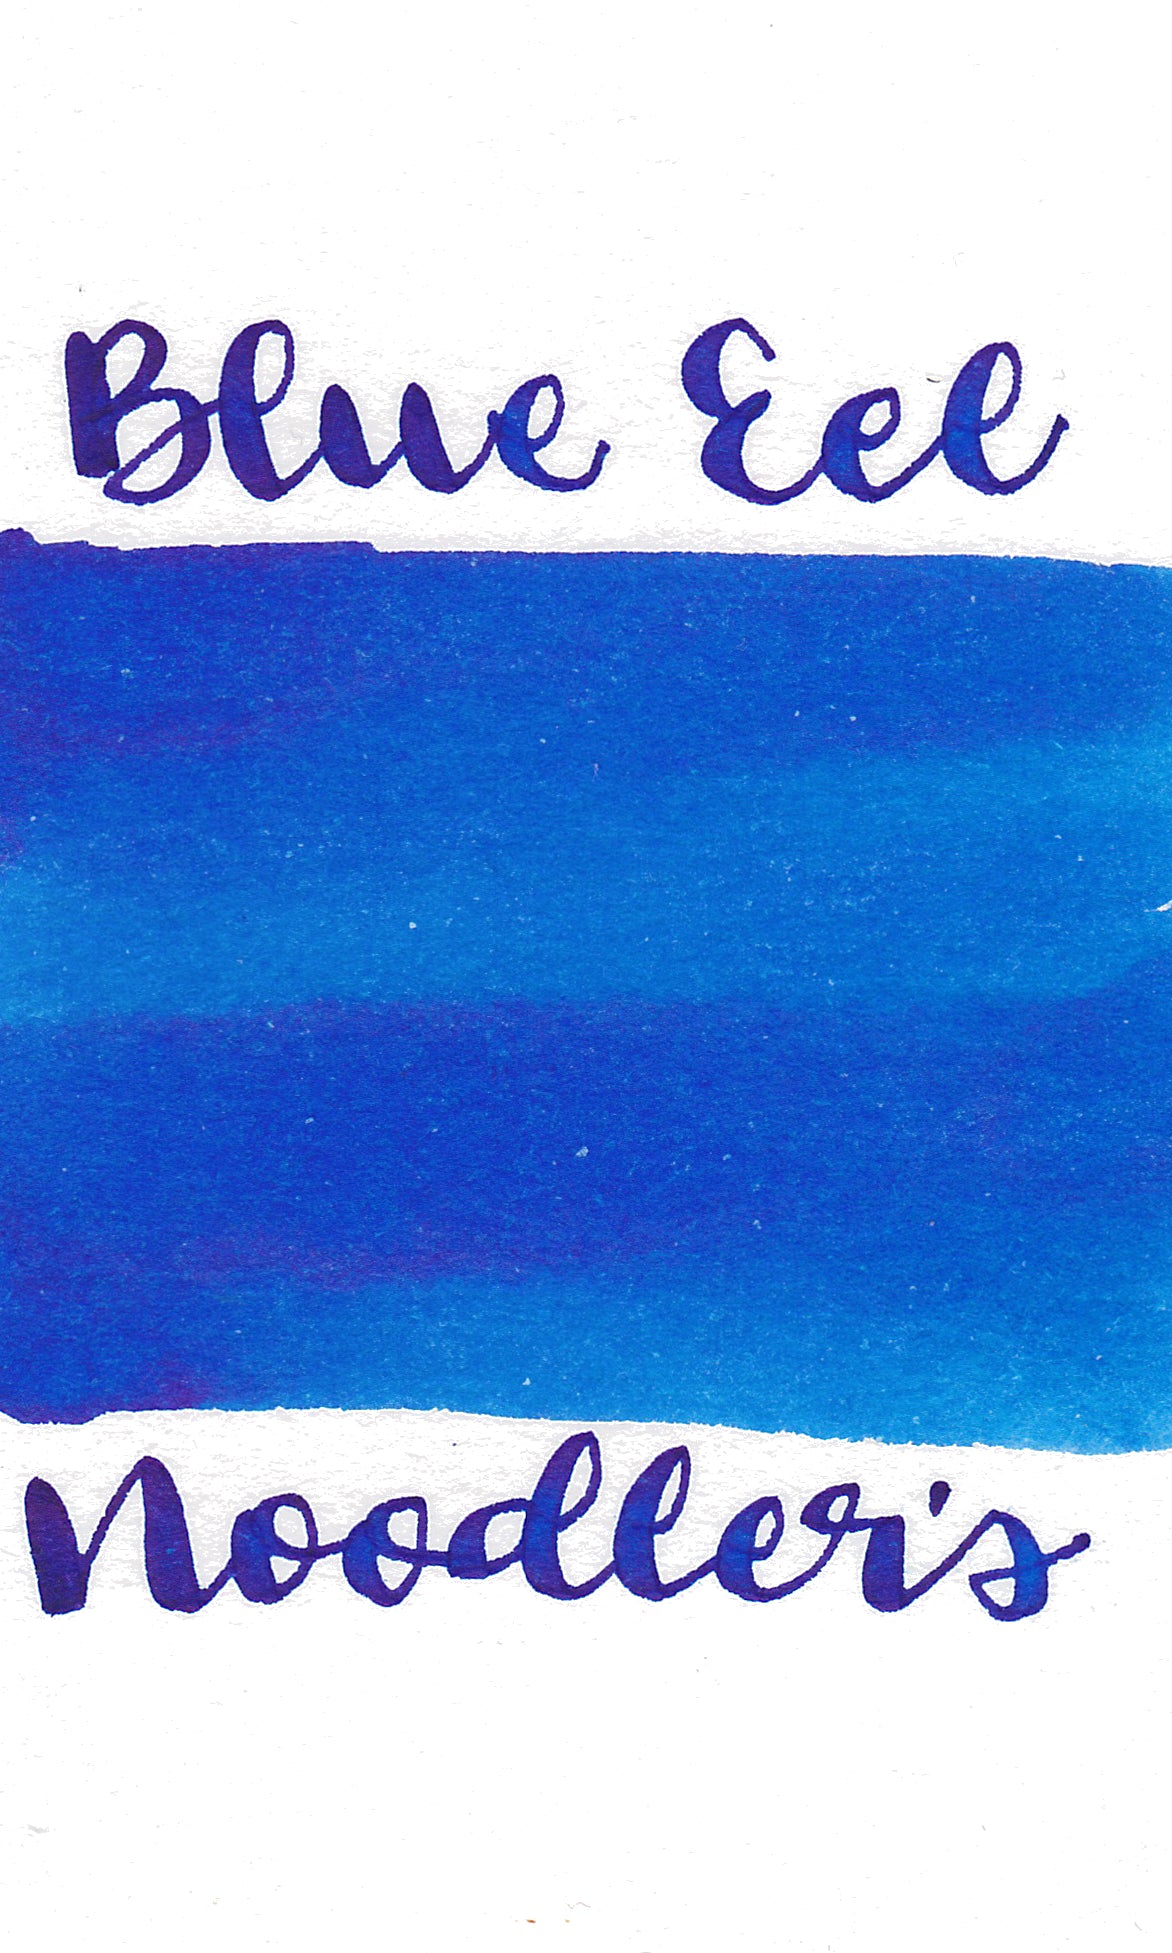 Noodler's Eel Blue